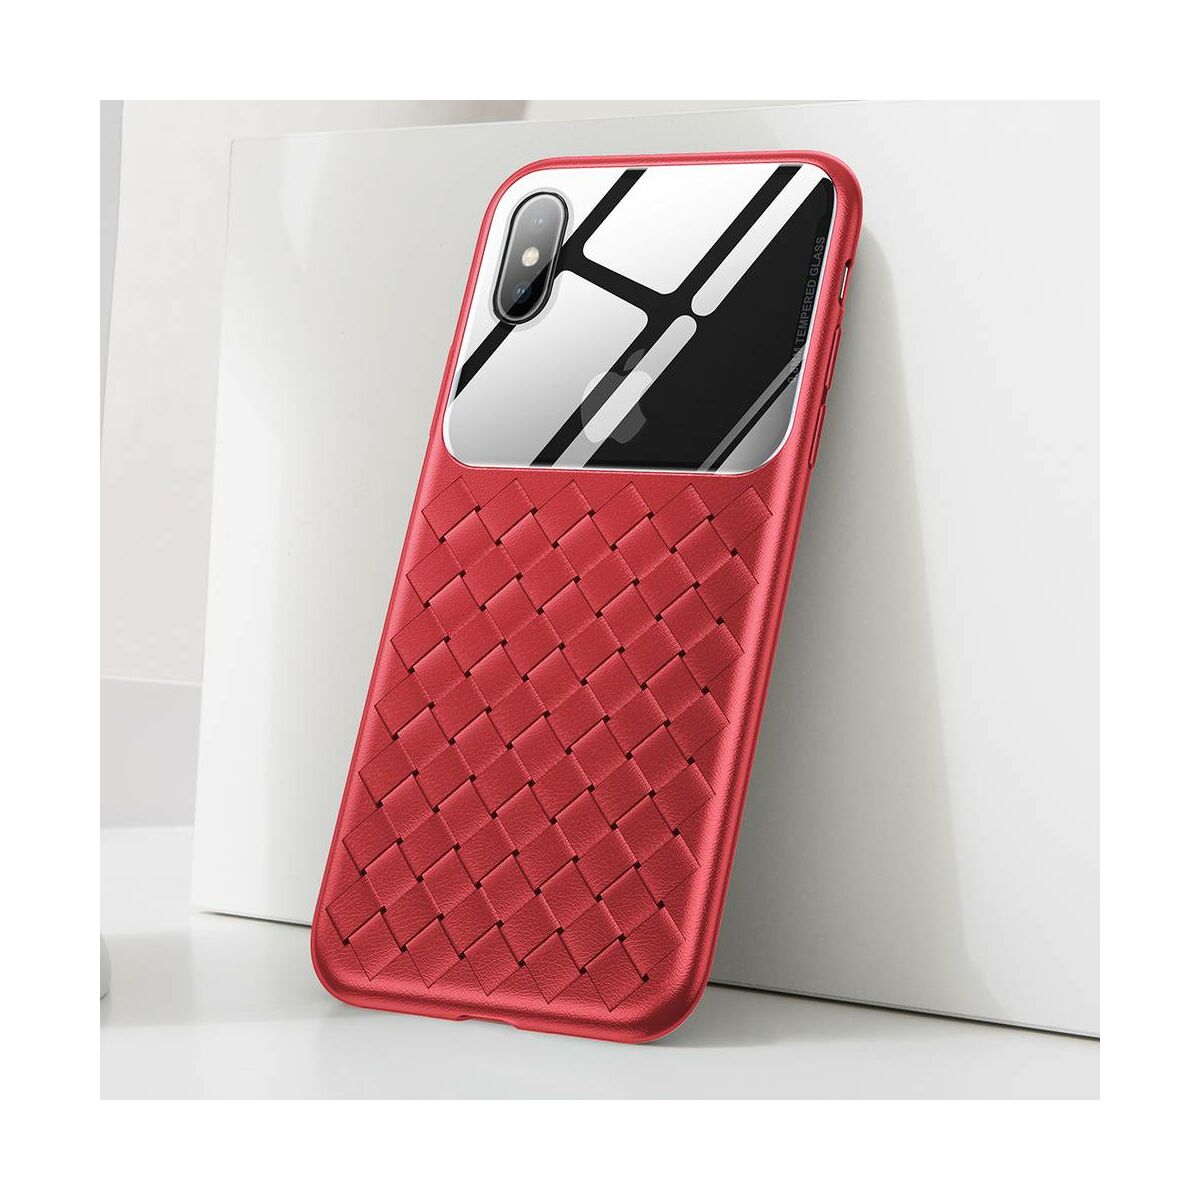 Kép 4/8 - Baseus iPhone XS Max üveg & tok, BV Weaving, piros (WIAPIPH65-BL09)